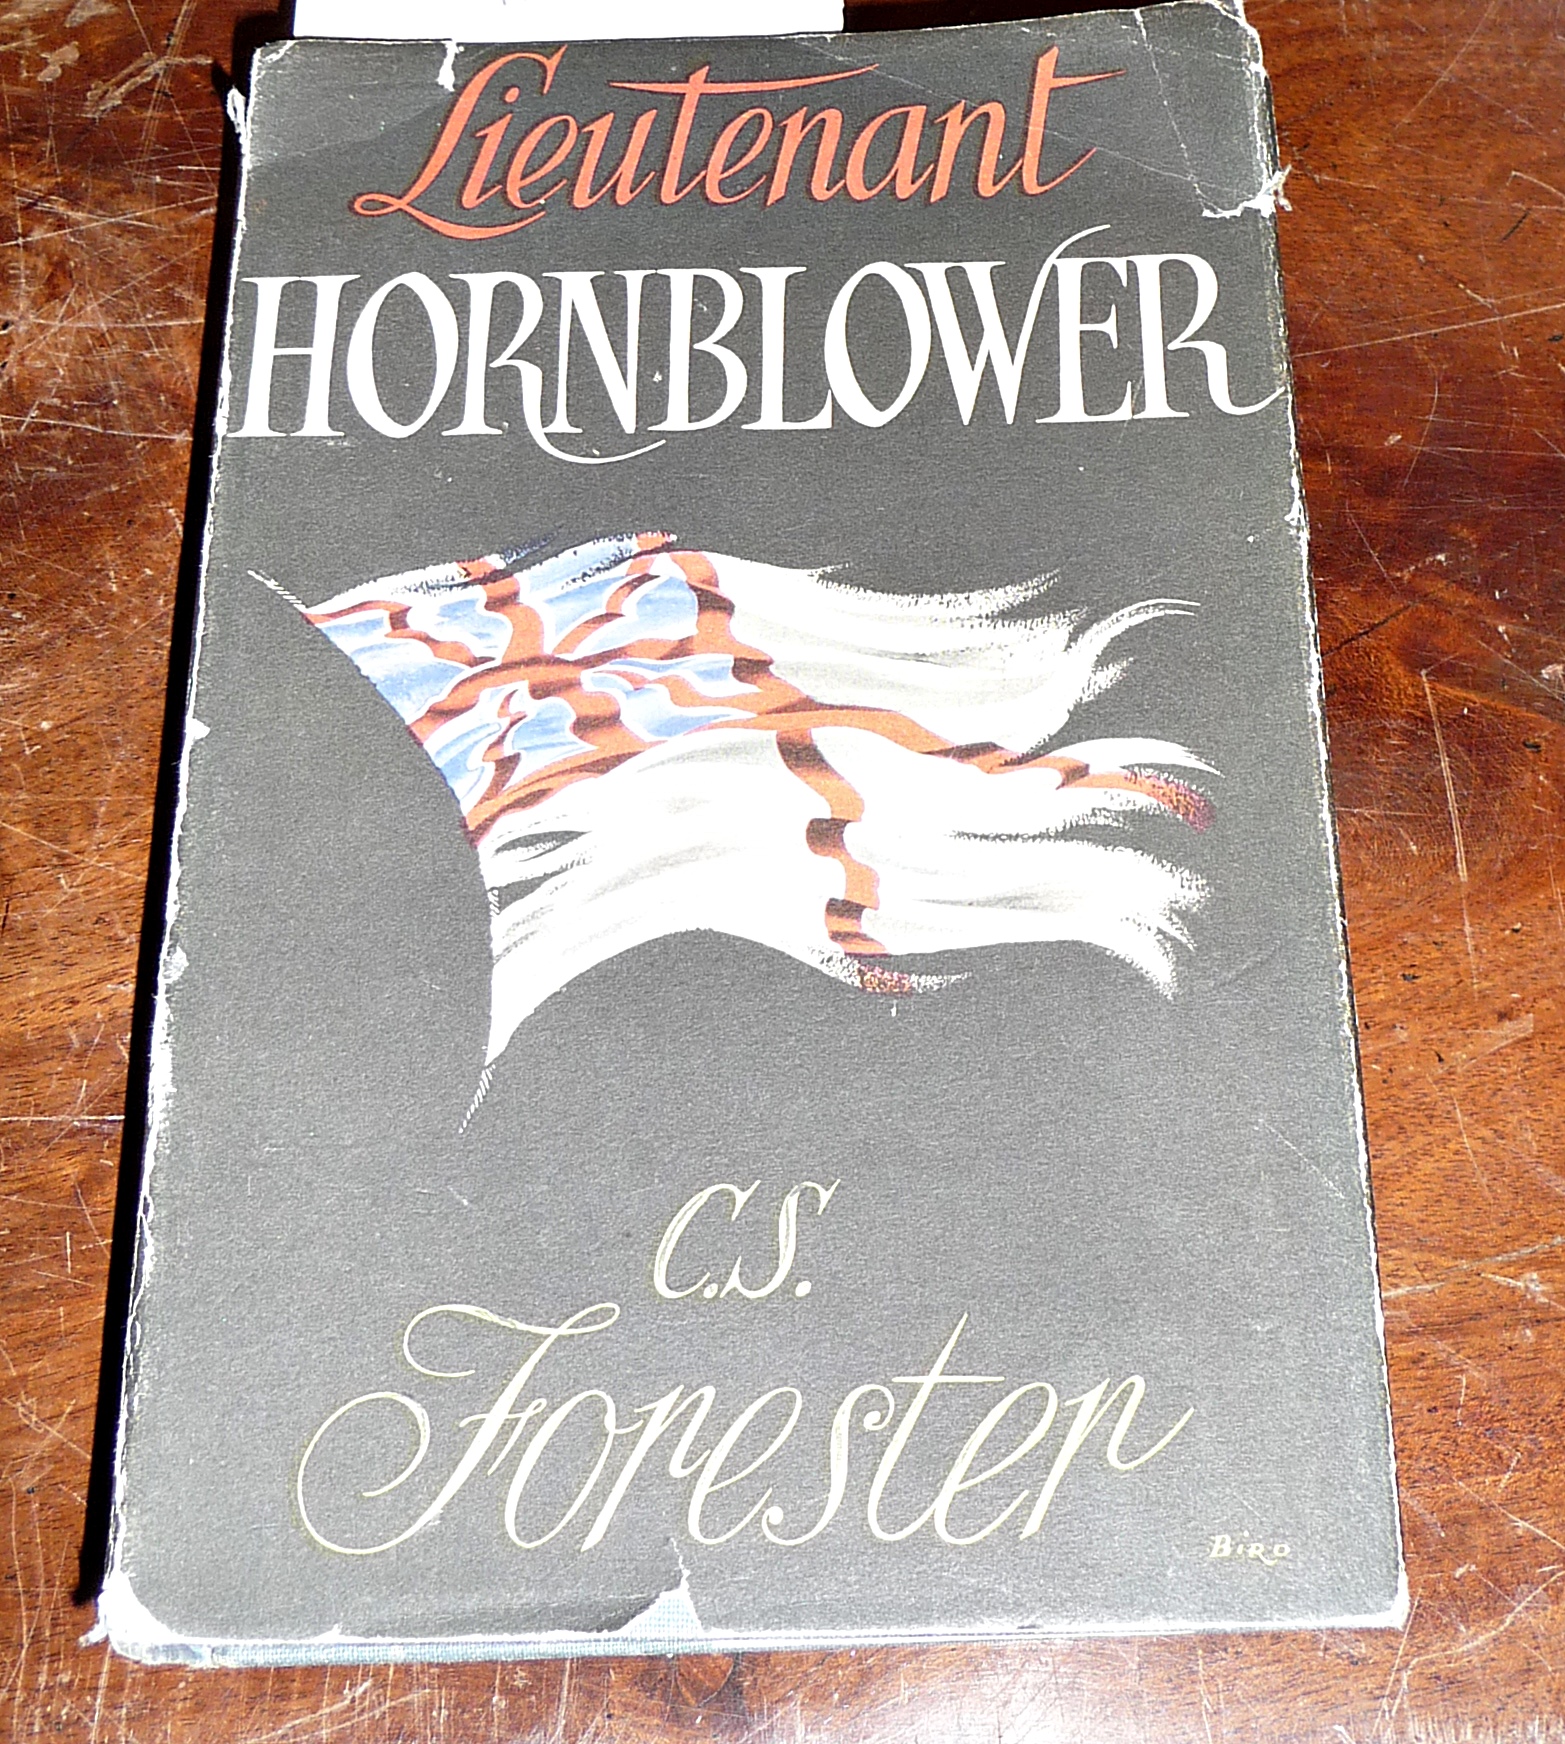 1st Edition "Lieutenant Hornblower" 1952 by C.S. Forrester, dust jacket, pub. Michael Joseph